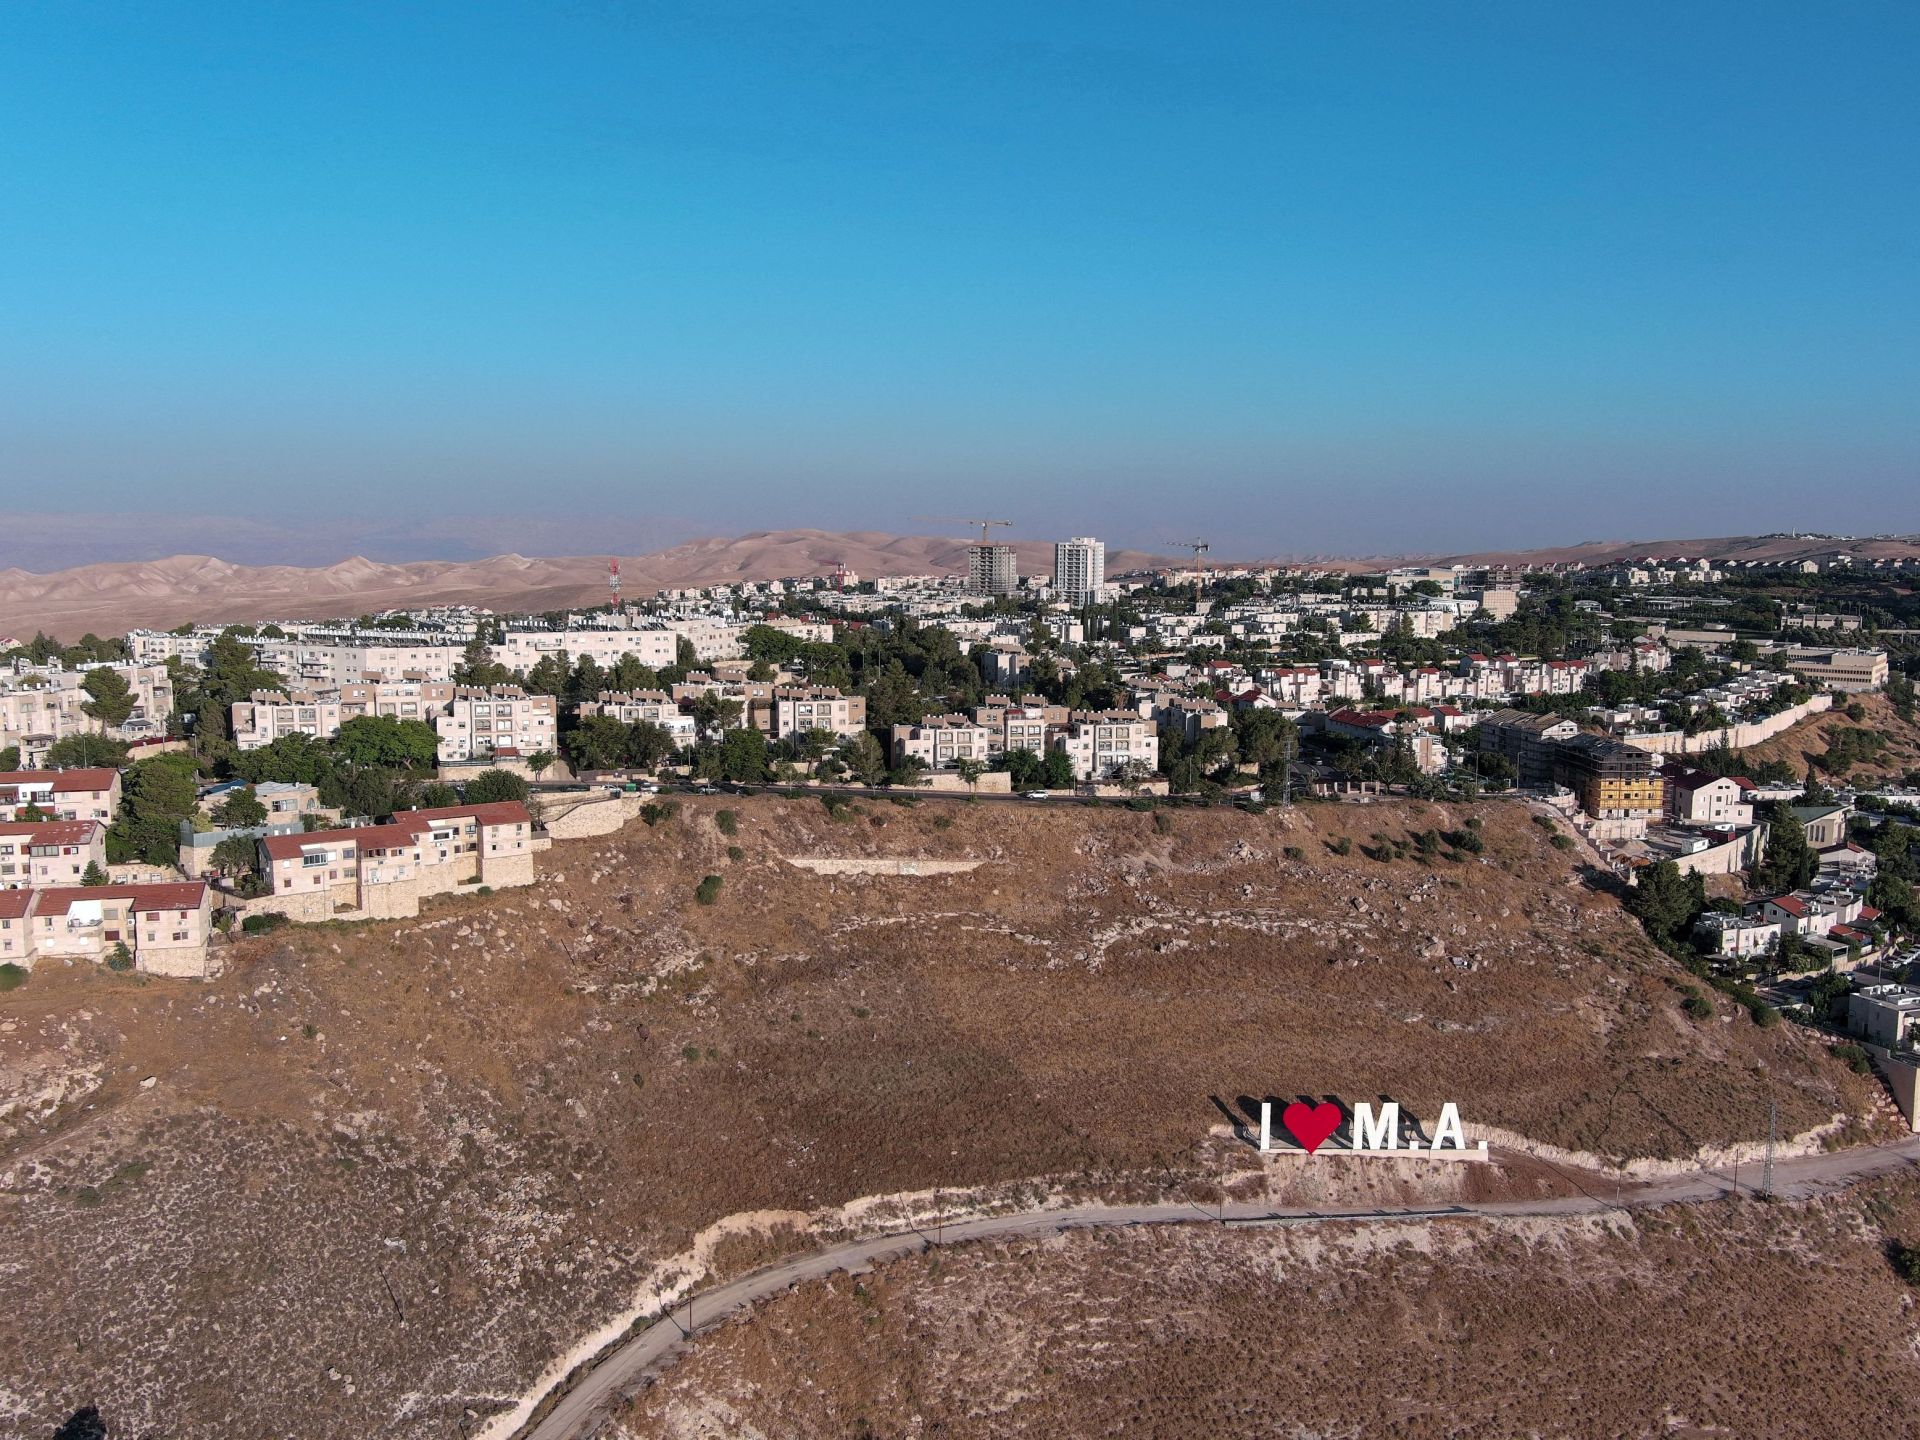 إسرائيل تمهد لبناء 3500 مستوطنة جديدة في الضفة الغربية | أخبار – البوكس نيوز